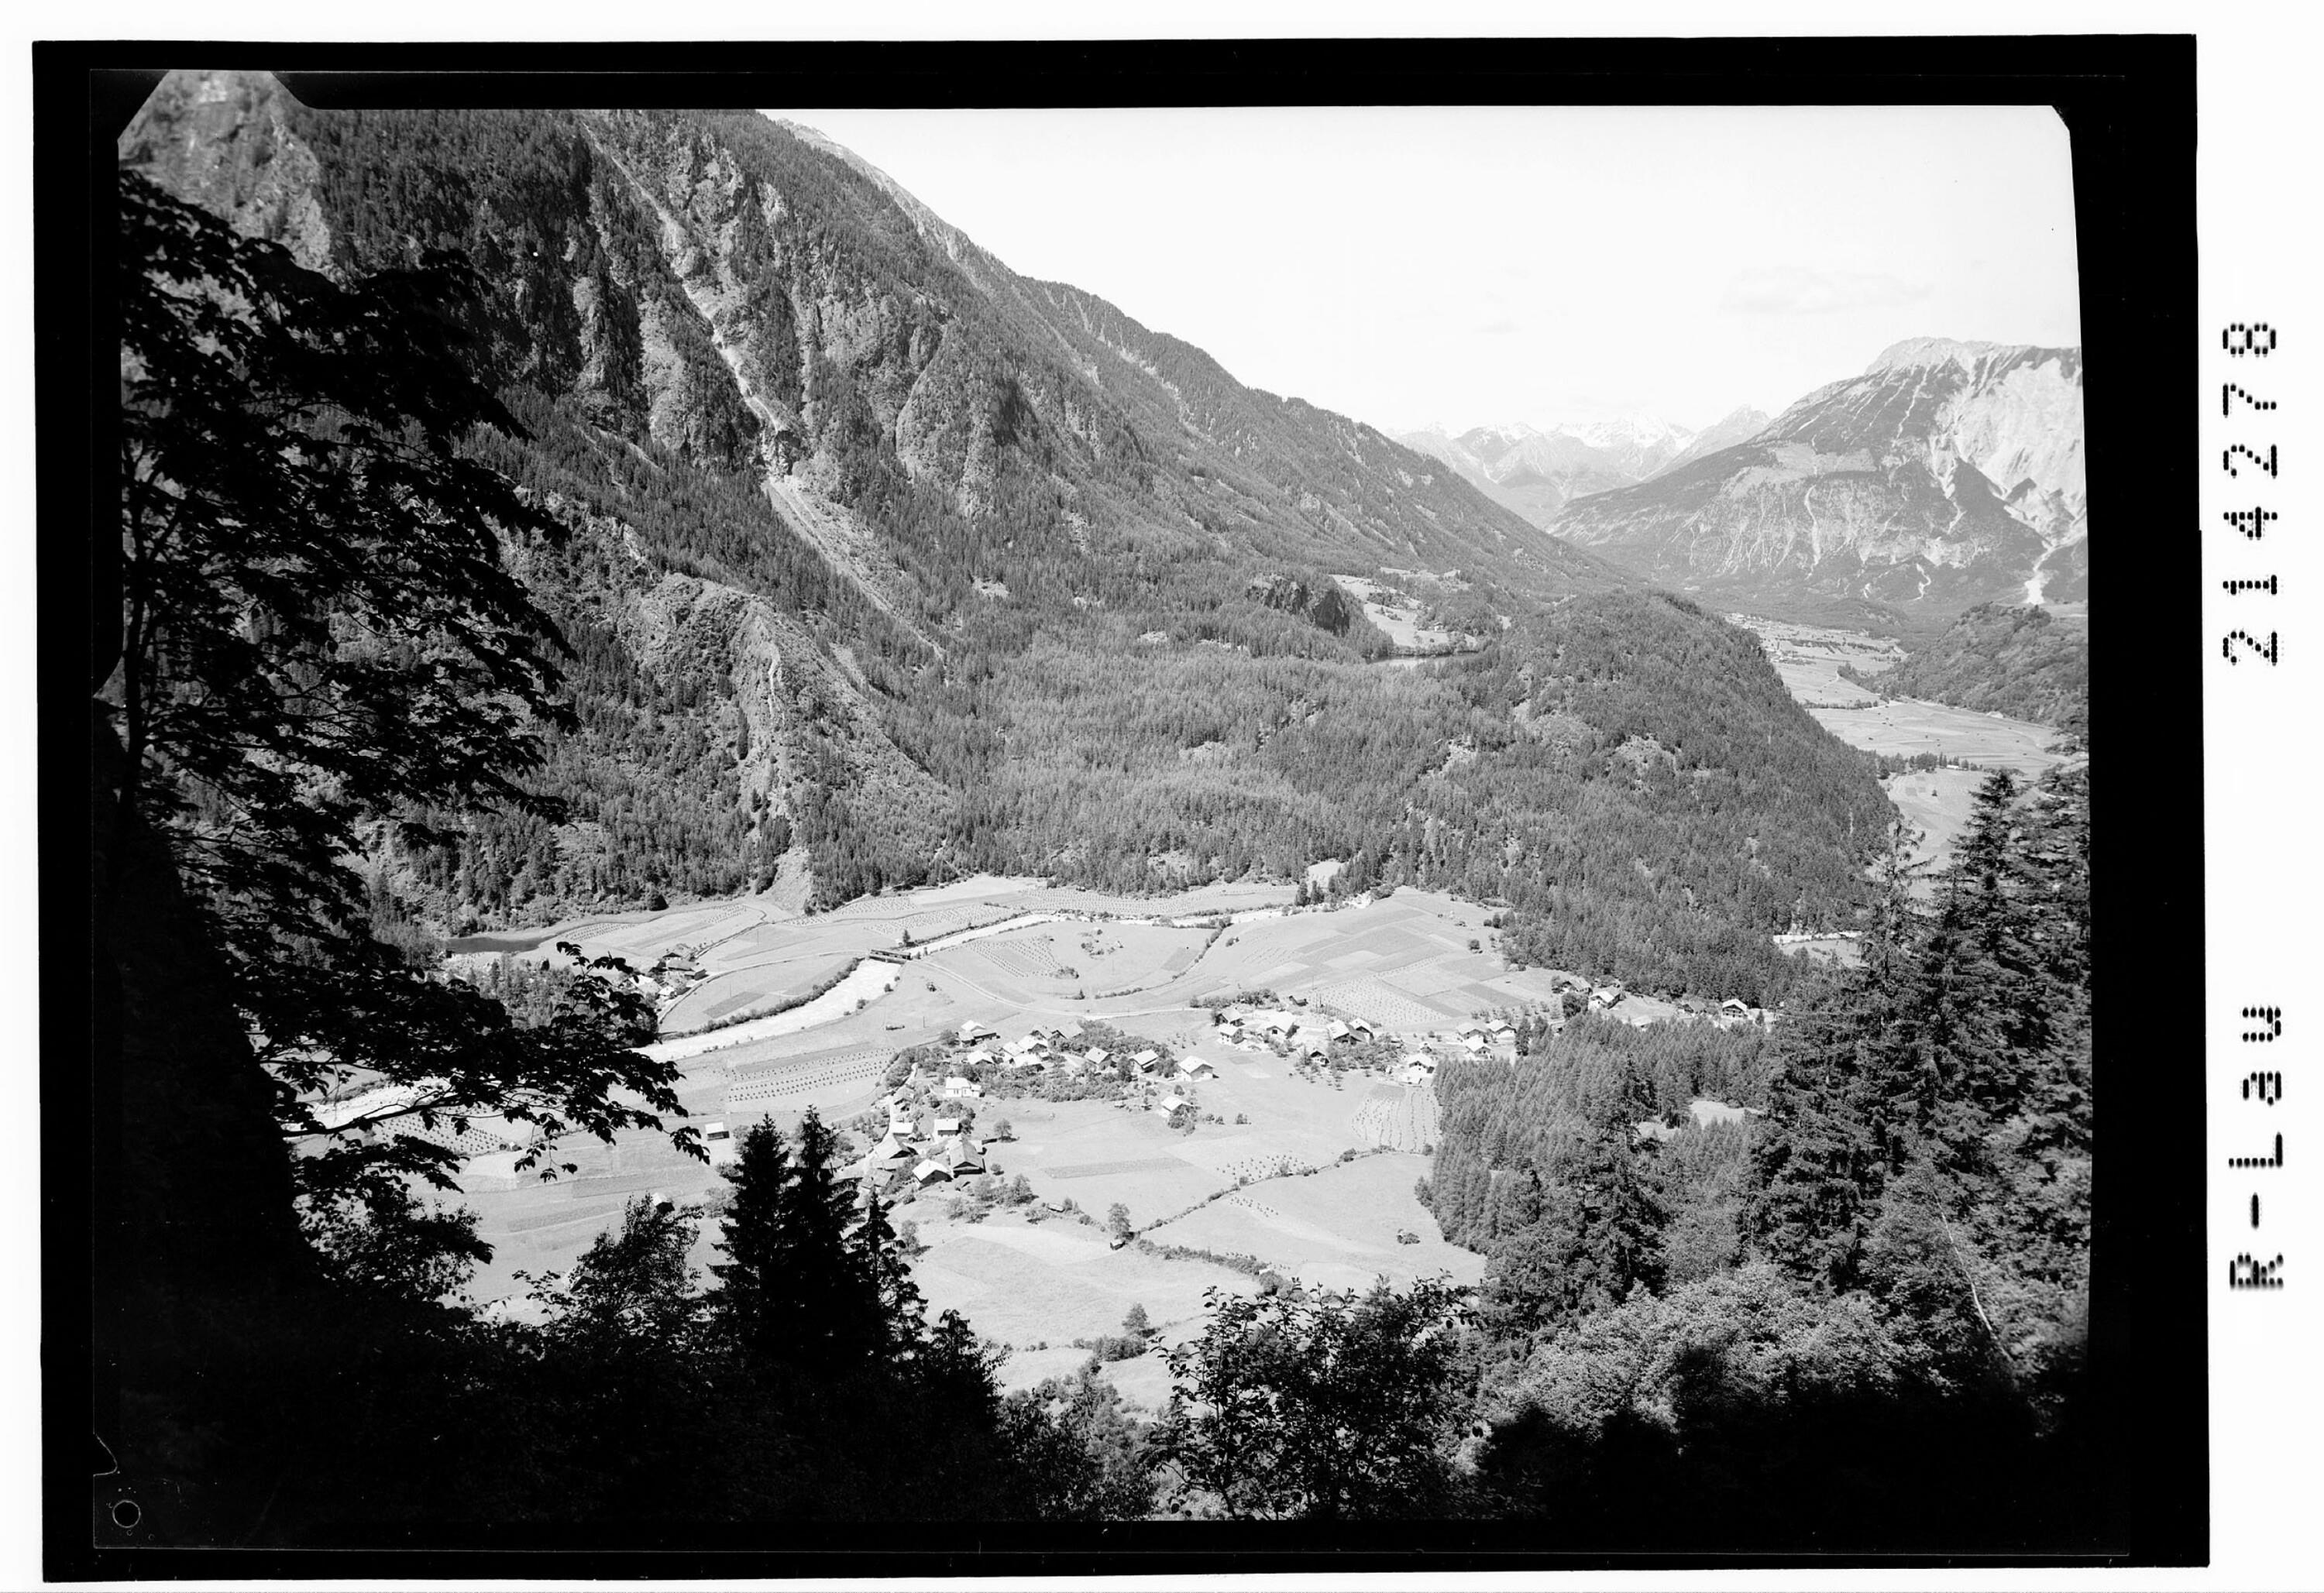 Habichen im Ötztal Tirol mit Piburger See und Lechtaler Alpen></div>


    <hr>
    <div class=